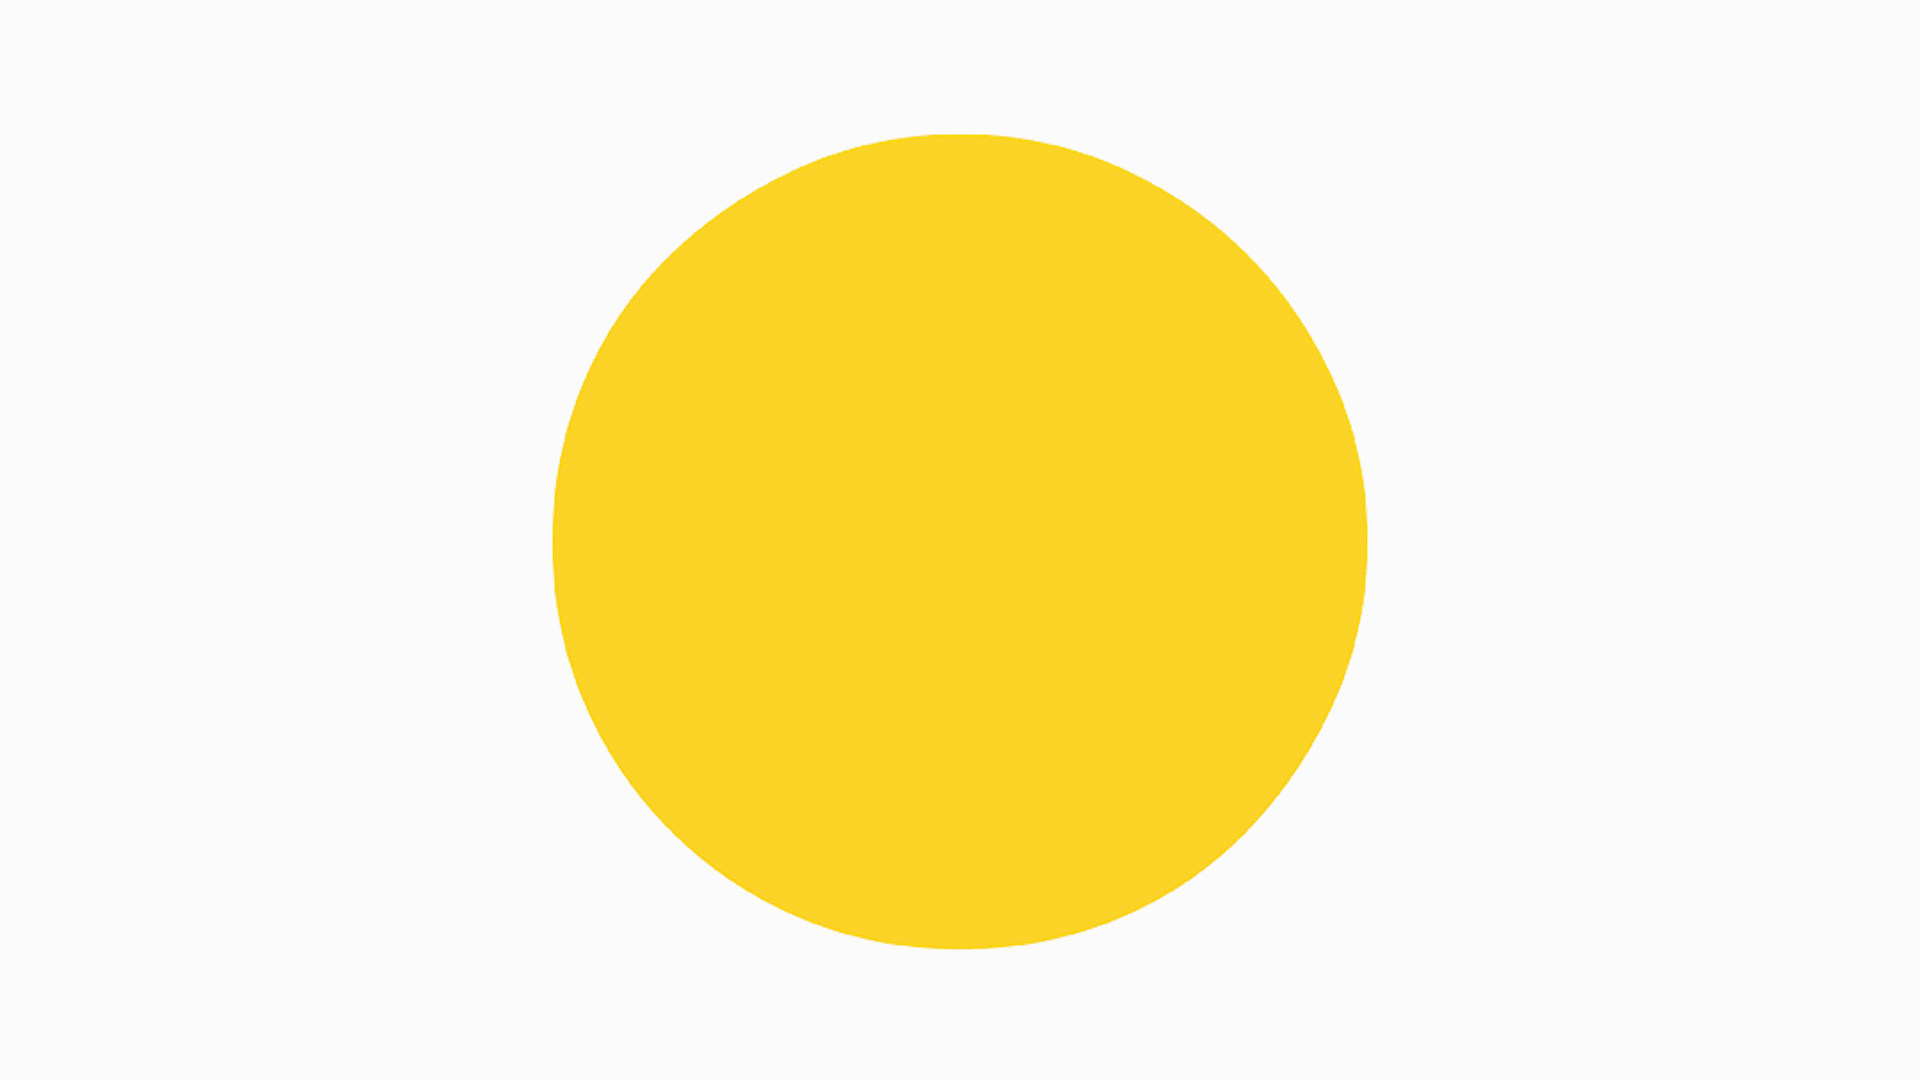 Желтый круг. Желтые кружочки. Желтый кружок. Круг желтого цвета.